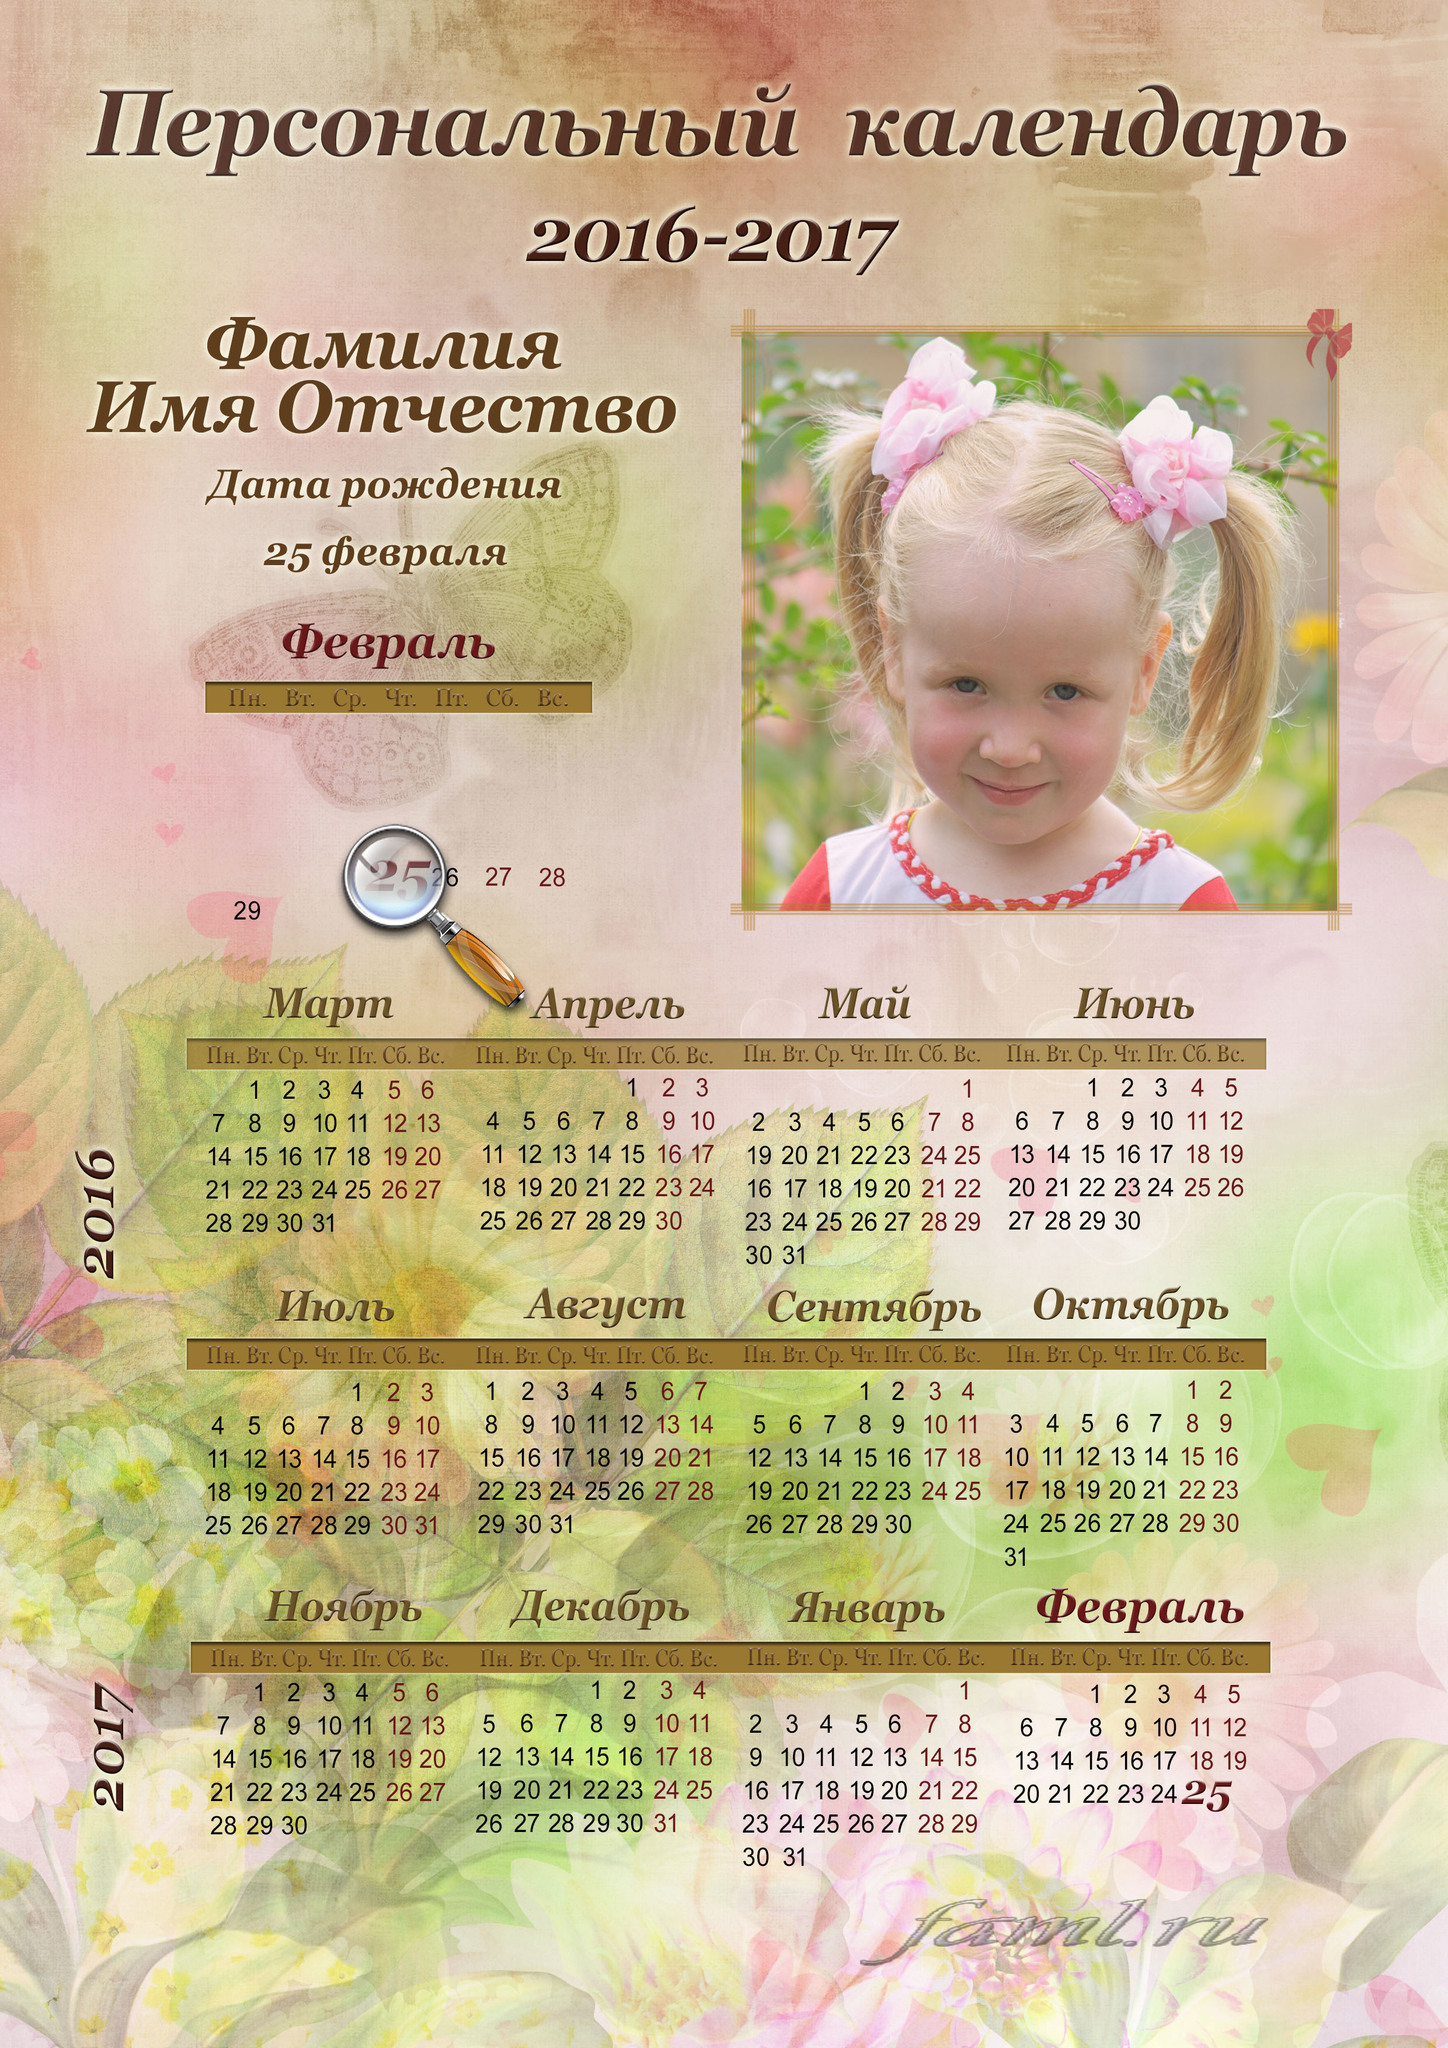 Дни рождения календарь Изображения – скачать бесплатно на Freepik